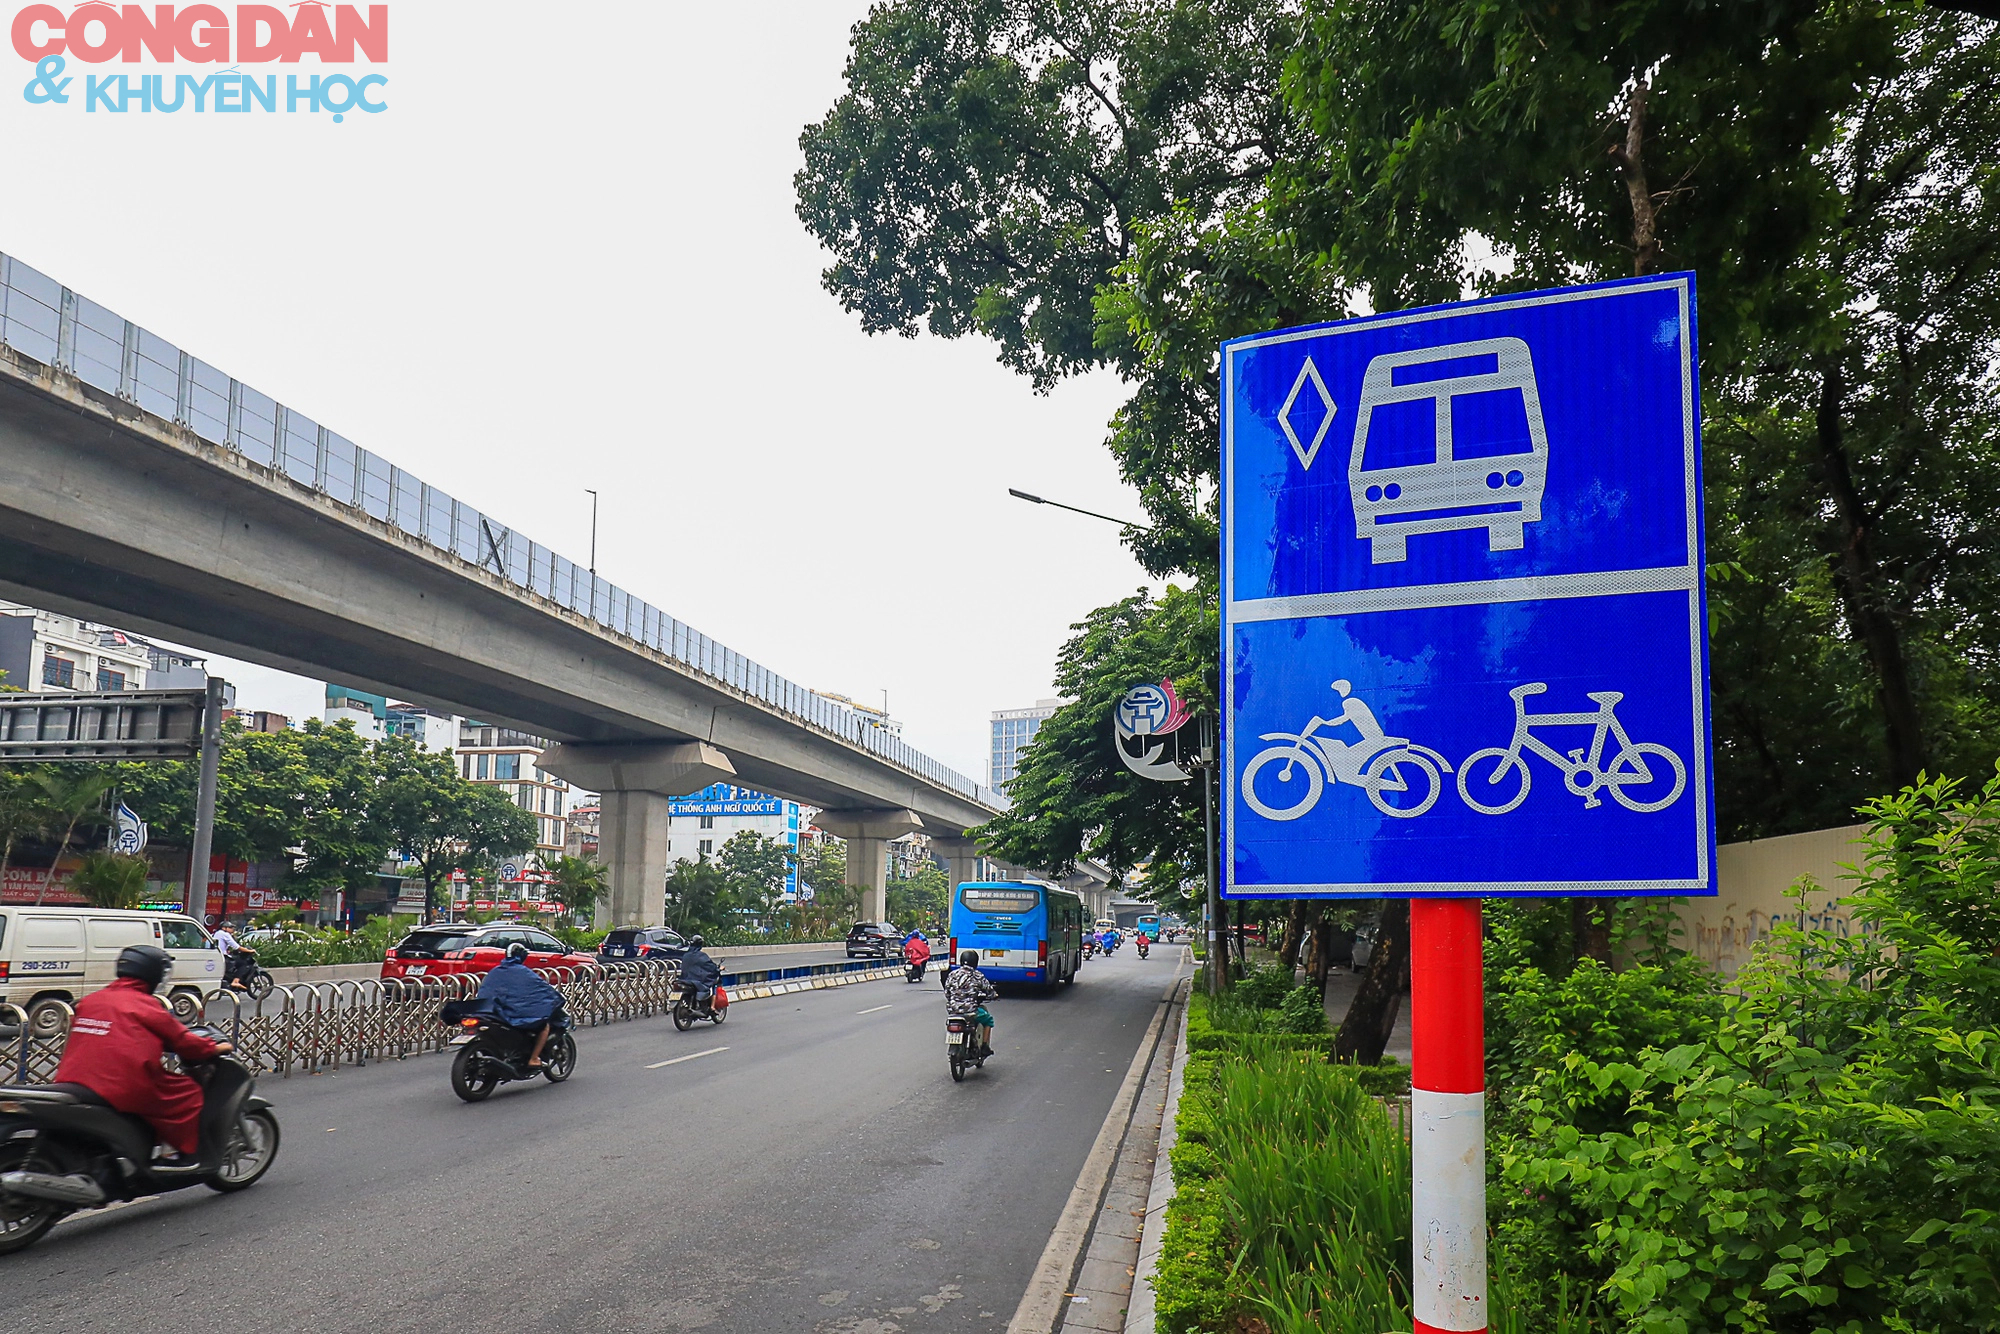 Hà Nội: Giao thông trên đường Nguyễn Trãi lộn xộn sau khi phân làn - Ảnh 8.